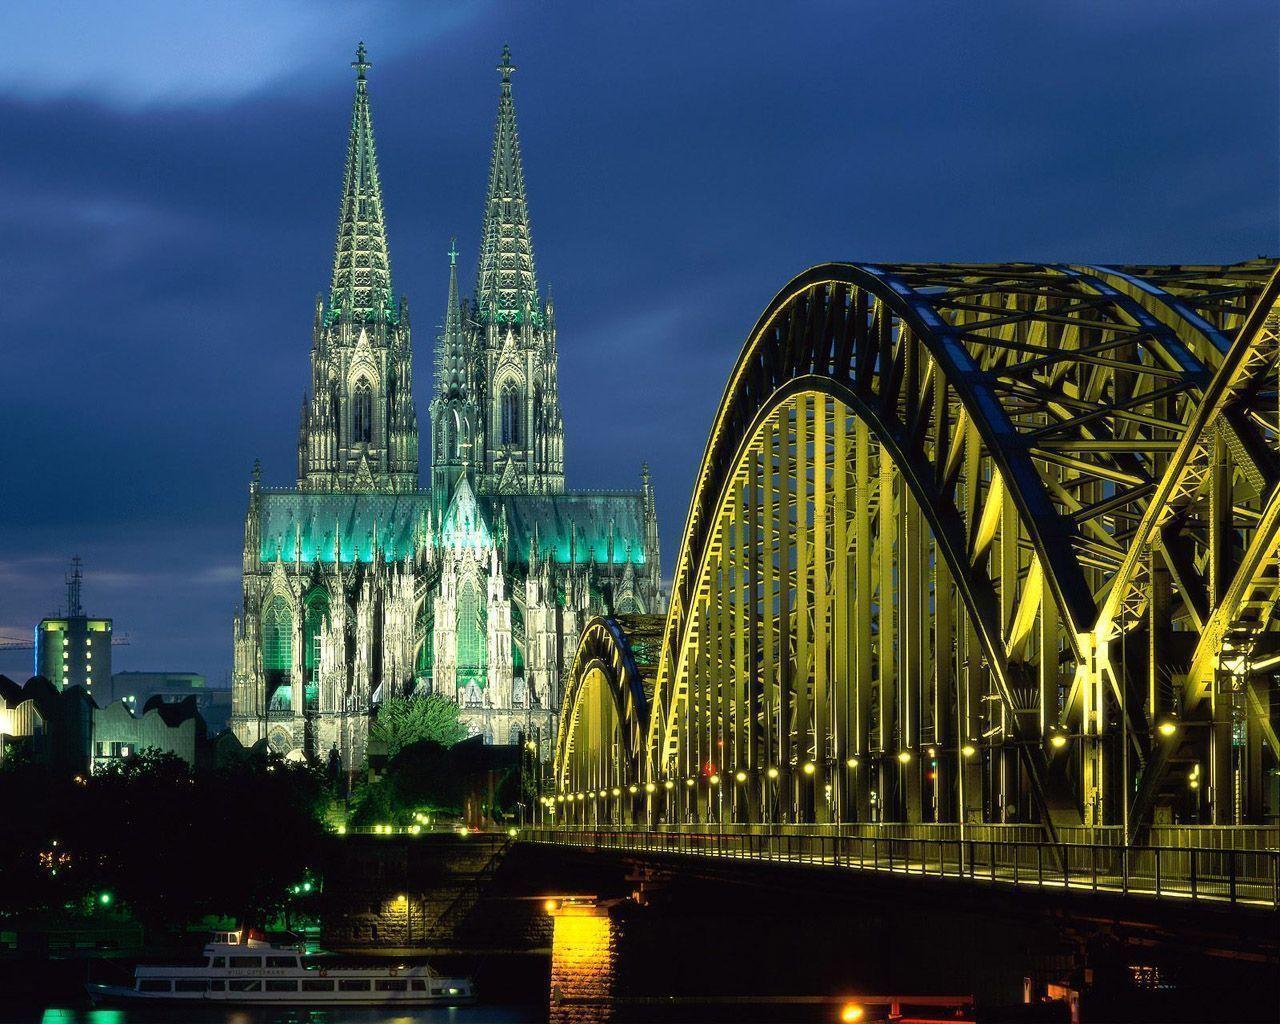 Free Bridge To Gothic Church Wallpapers, Free Bridge To Gothic